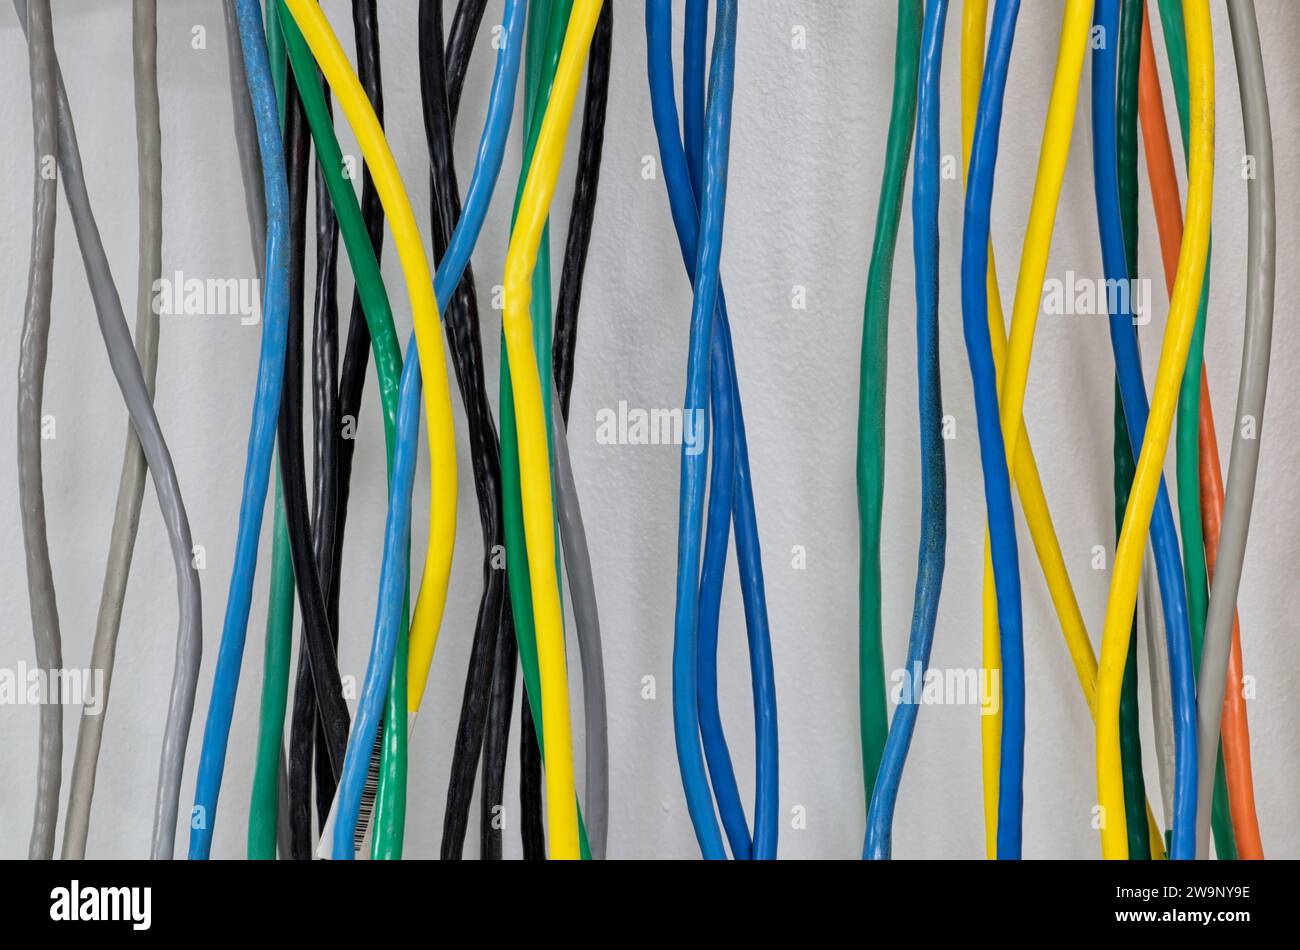 Bunte elektrische Kabel, die vertikal an einer Wand hängen. CAT5 Twisted-Pair-Kabel für Computernetzwerke. Stockfoto